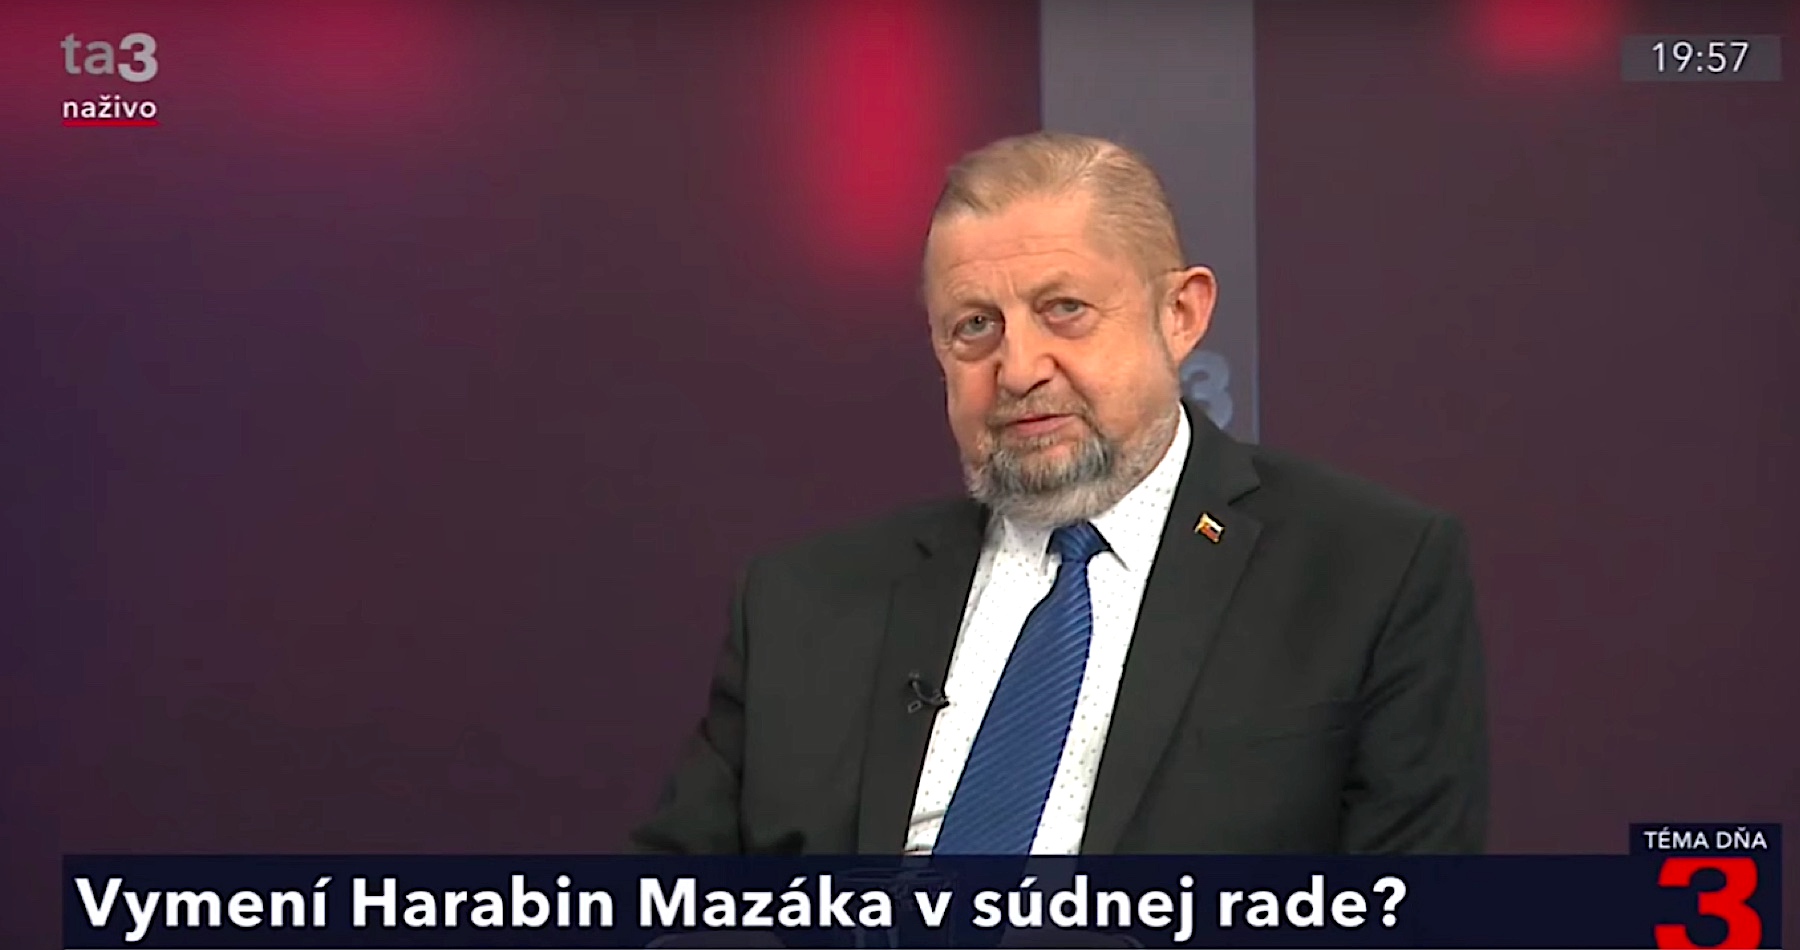 VIDEO: Harabin hovorí o potrebe zrušiť špeciálny súd a prijať aj lustračný zákon kvôli rozkladu justície na Slovensku a nedôvere občanov v právny štát.